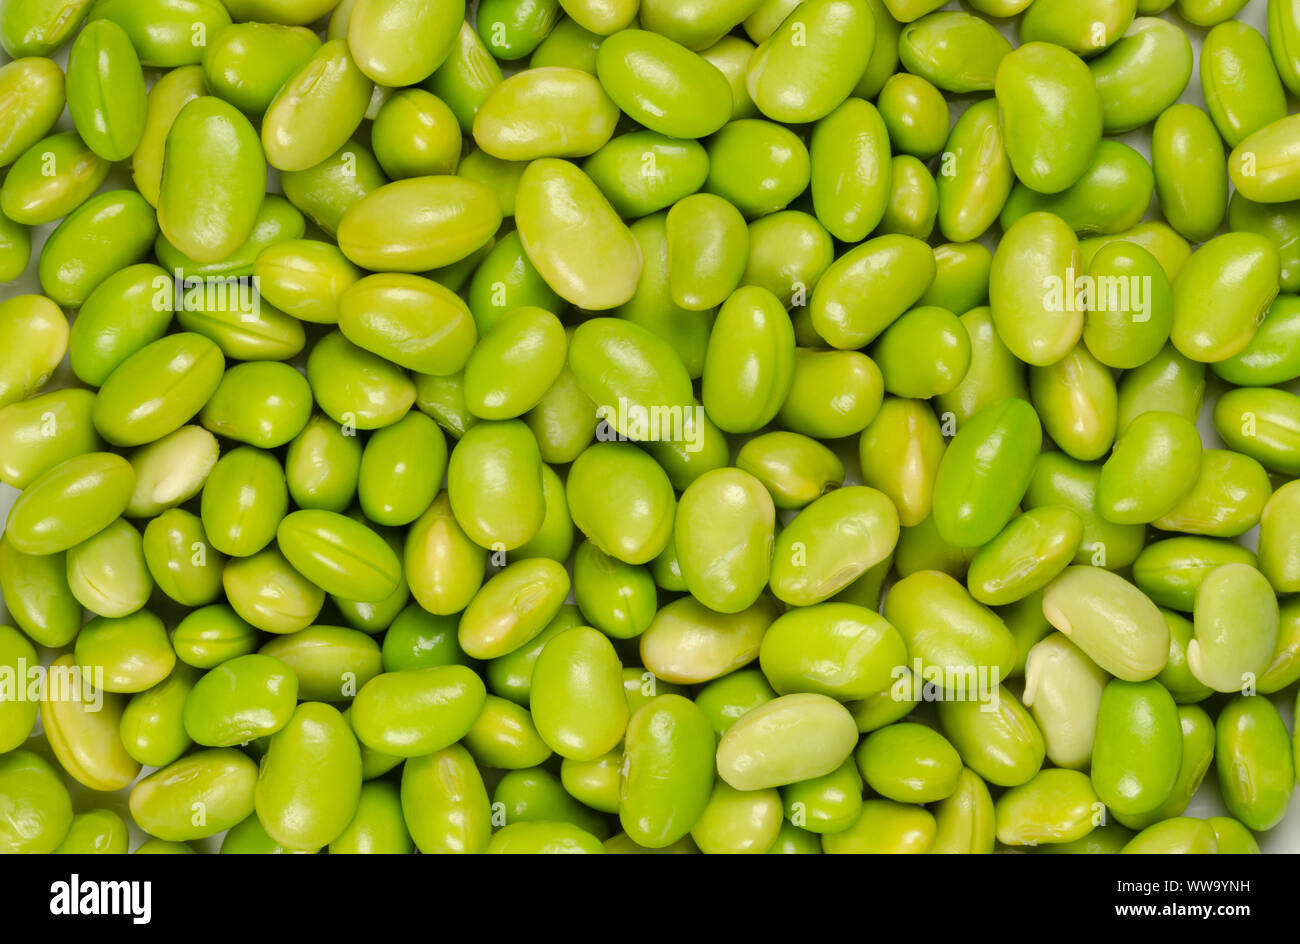 El Edamame. Soja verde. También llamado mukimame, habas de Soja inmaduras fuera de la vaina. Glycine max, una legumbre, comestibles después de la cocción y una fuente de proteínas. Foto de stock